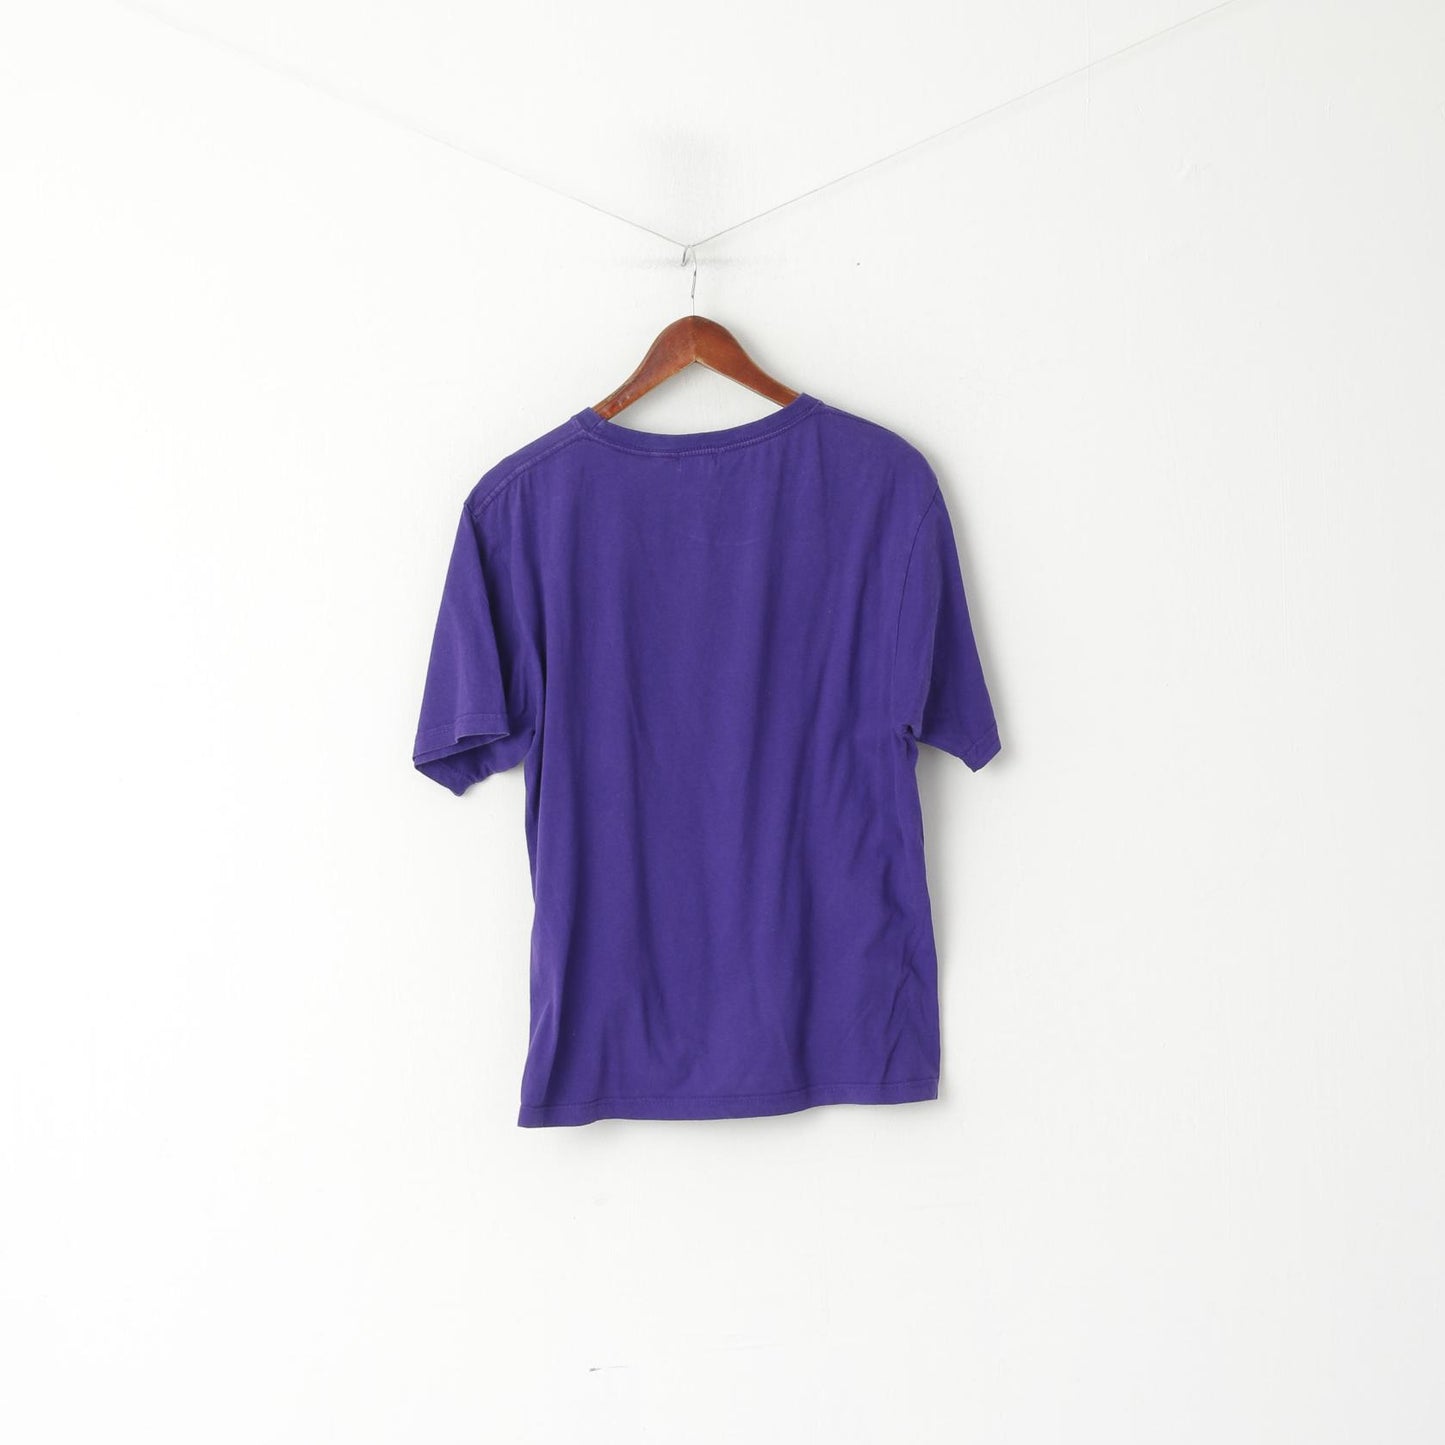 Armani Jeans Men L (M) Shirt Purple Cotton Graphic Slim Fit Crew Neck Top